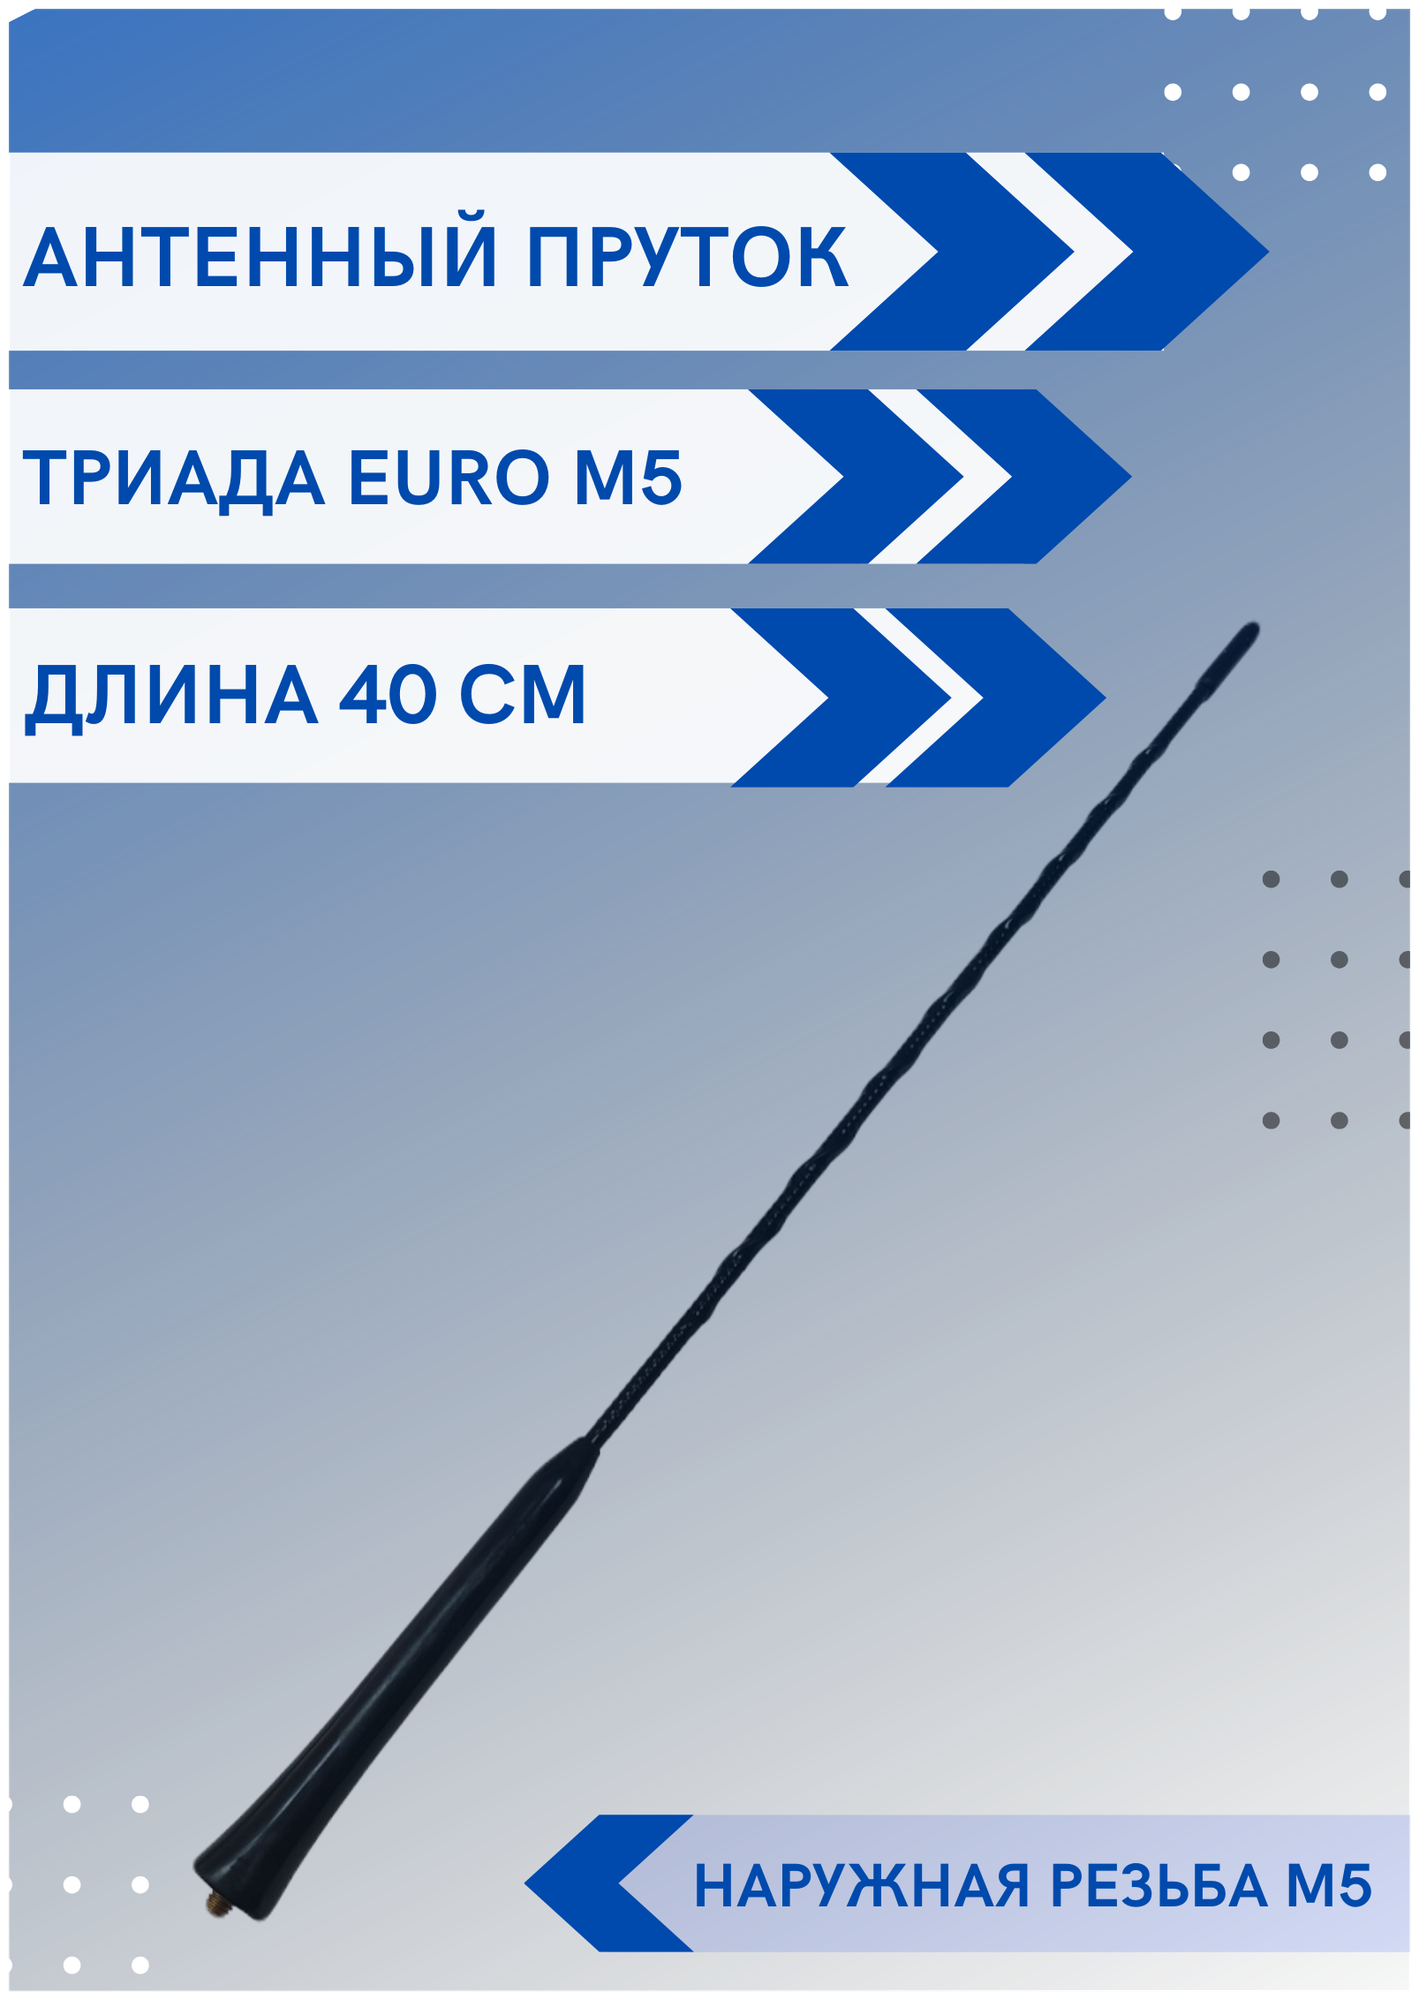 Ремкомплект EURO M5/antenna.ru - пруток универсальный с наружной резьбой М5